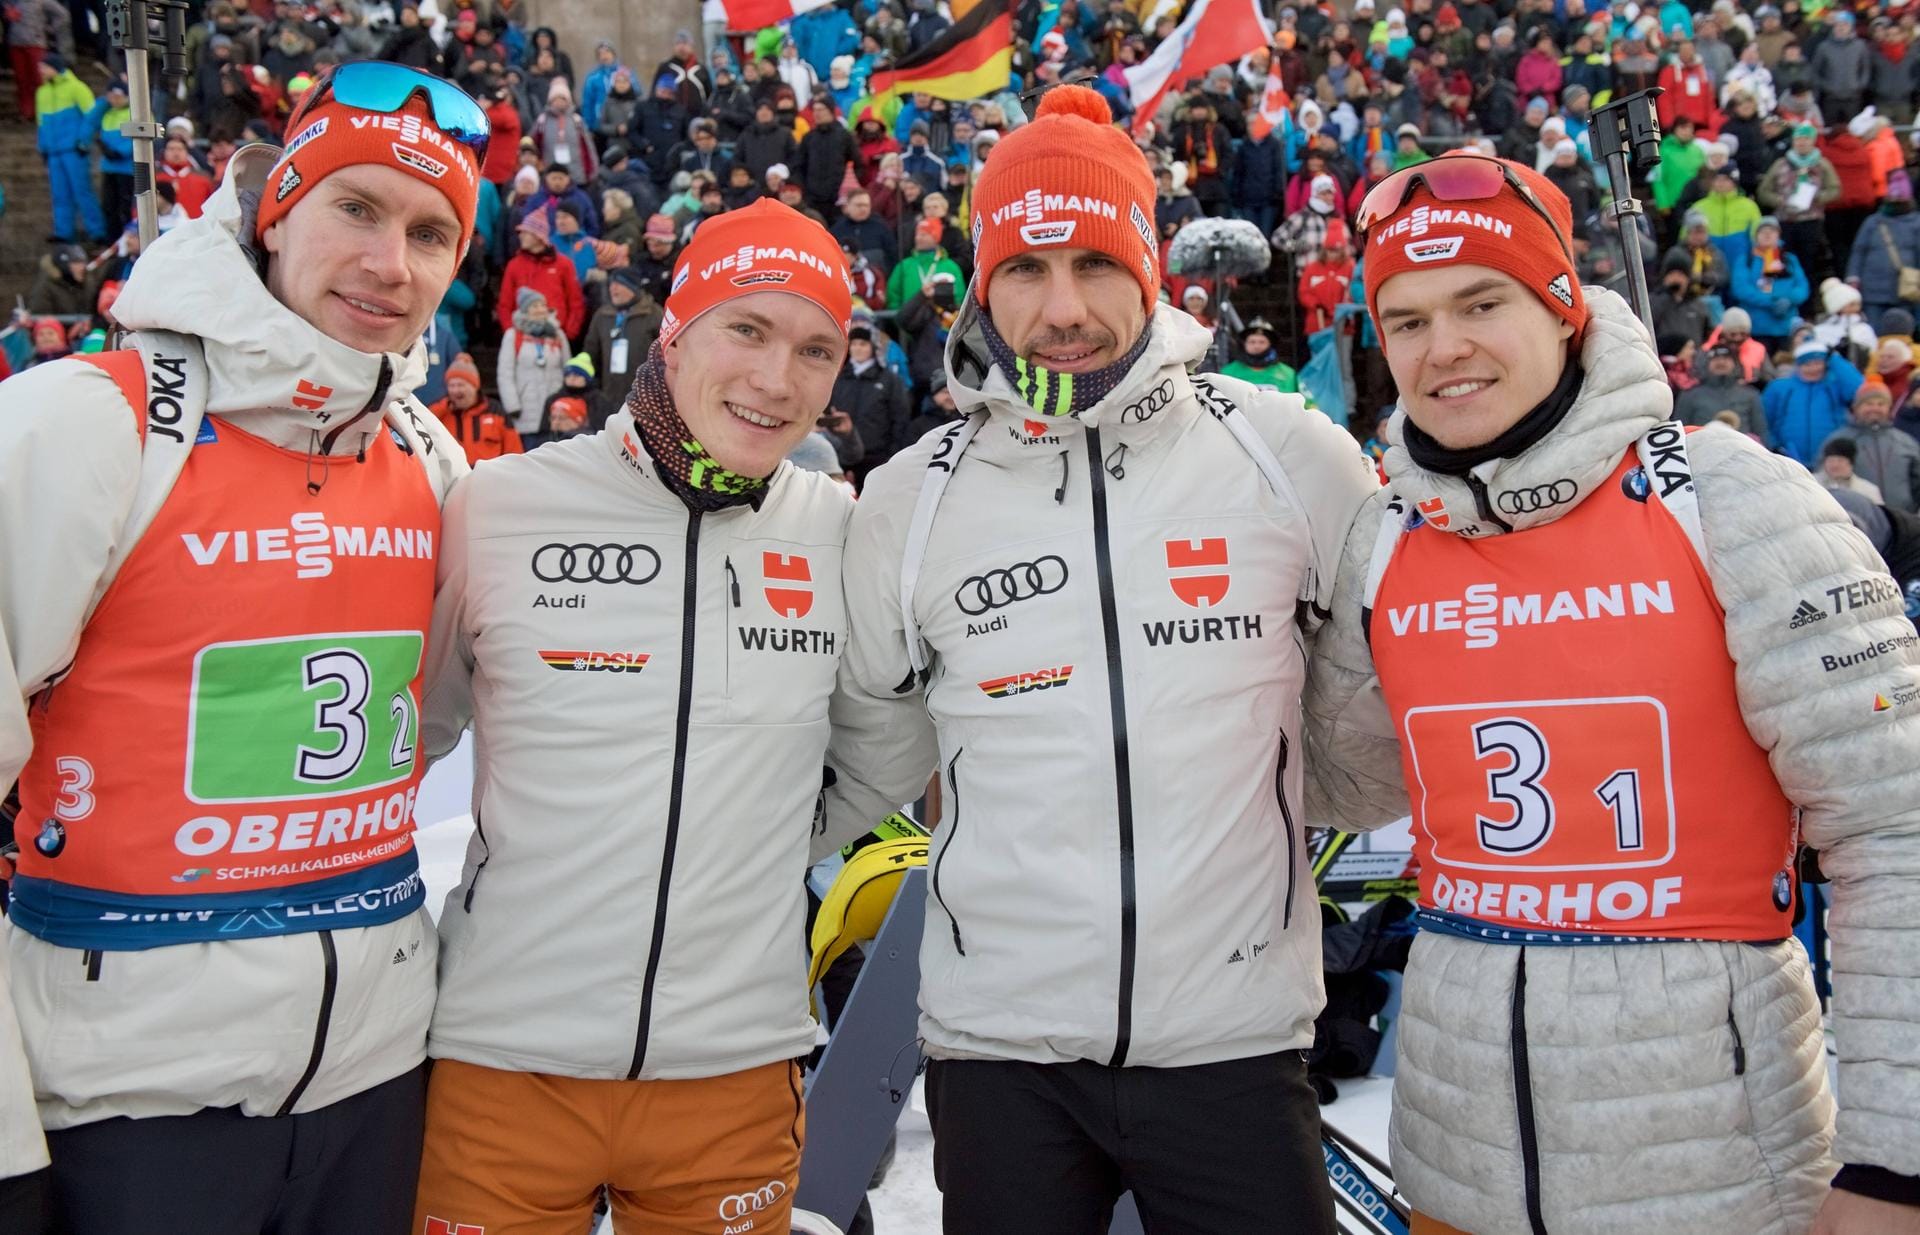 Der Kader der deutschen Biathlon-Herren in der Saison 2019/20: